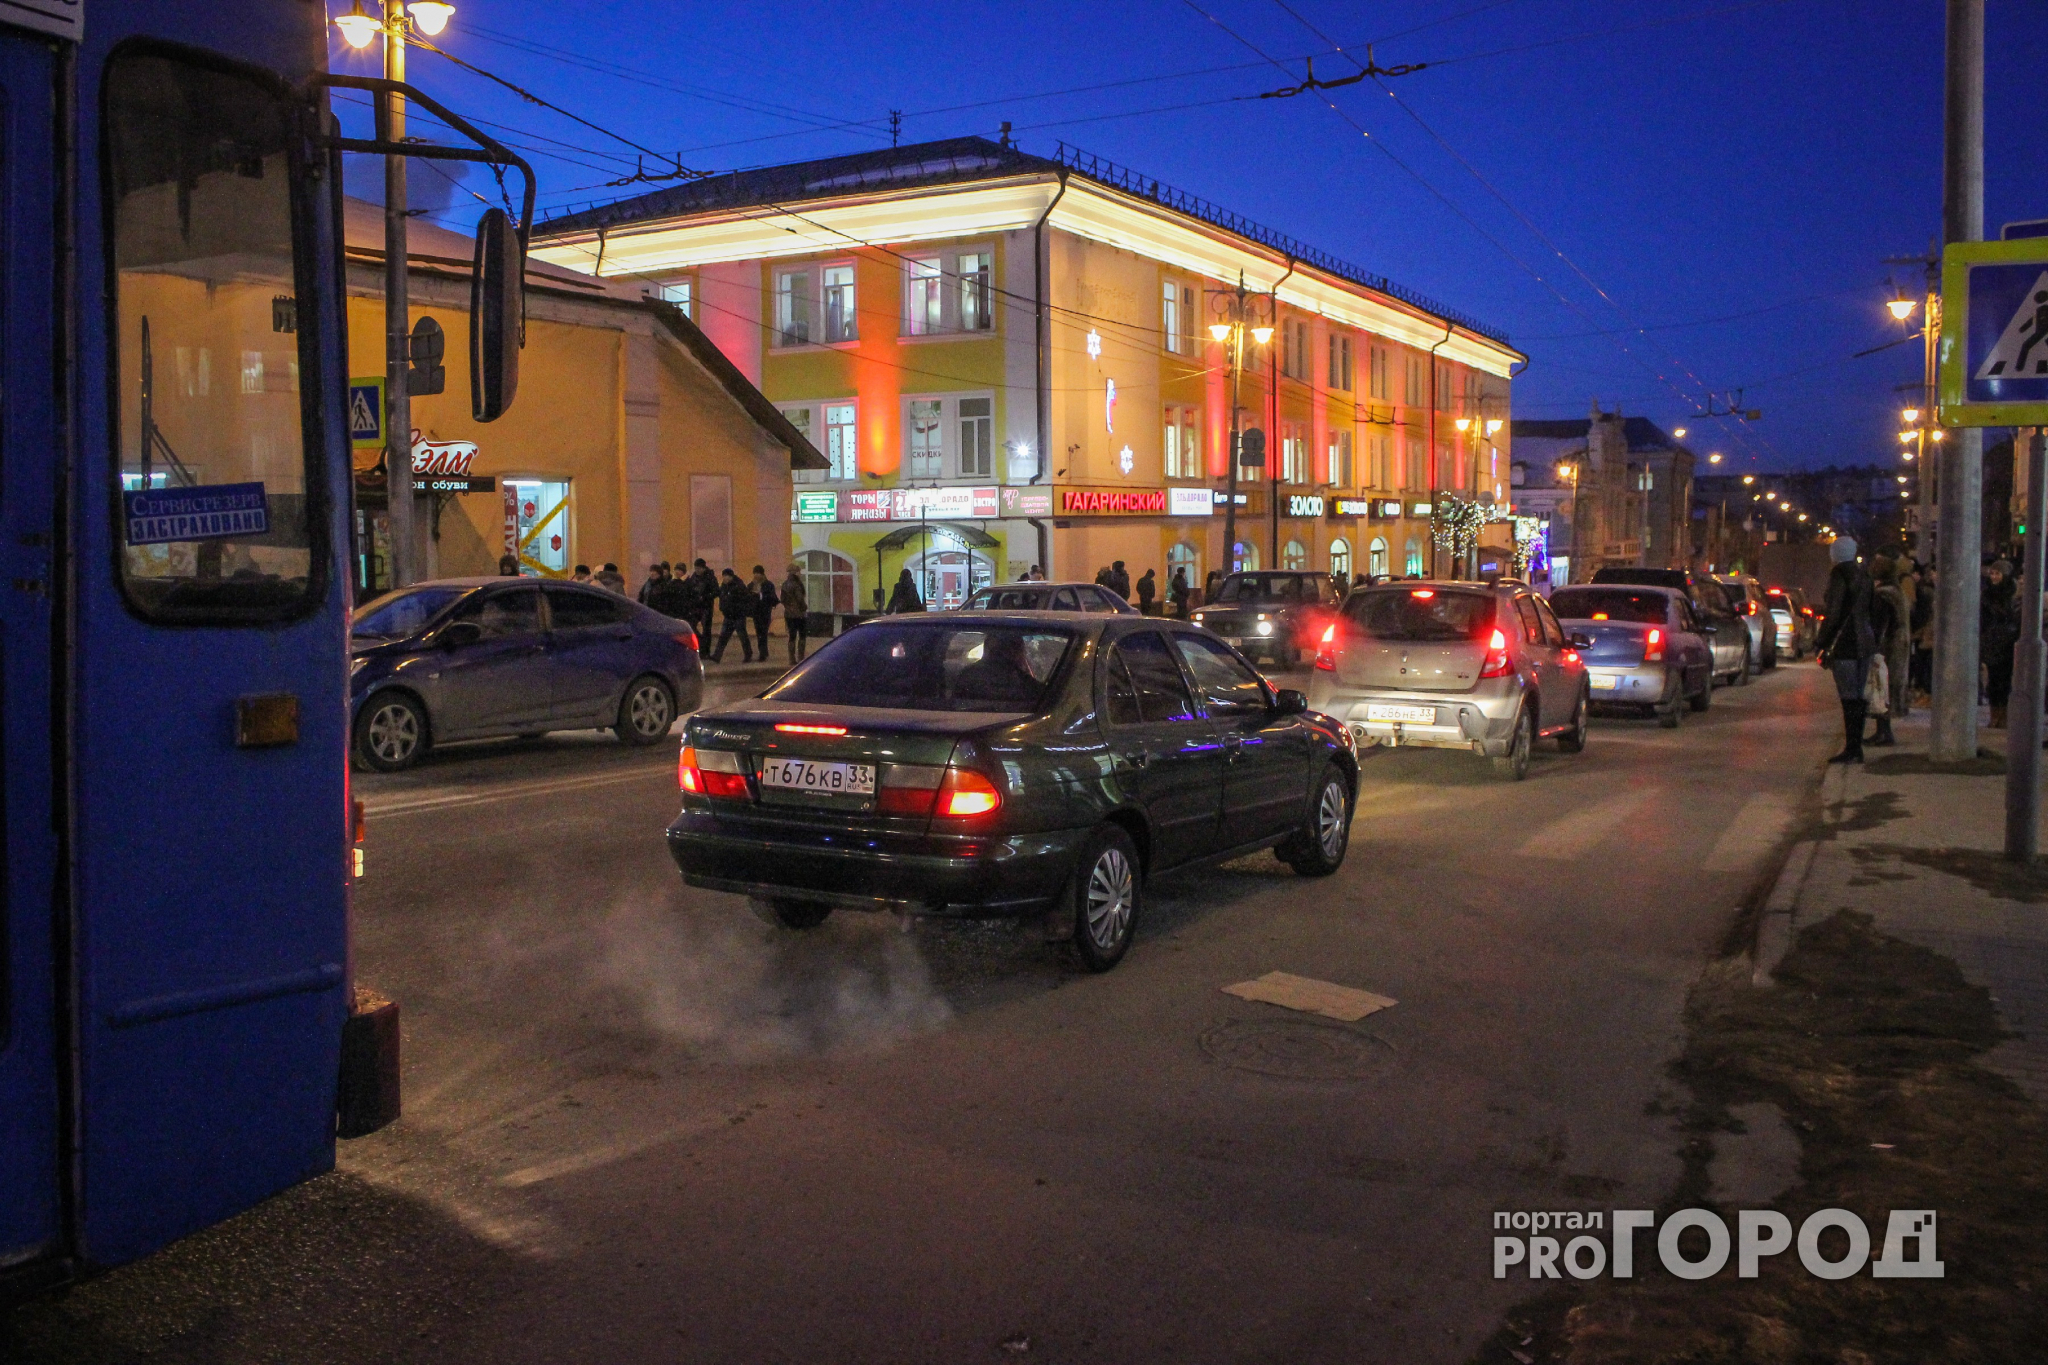 Нижний Новгород попал в рейтинг самых загруженных дорог планеты